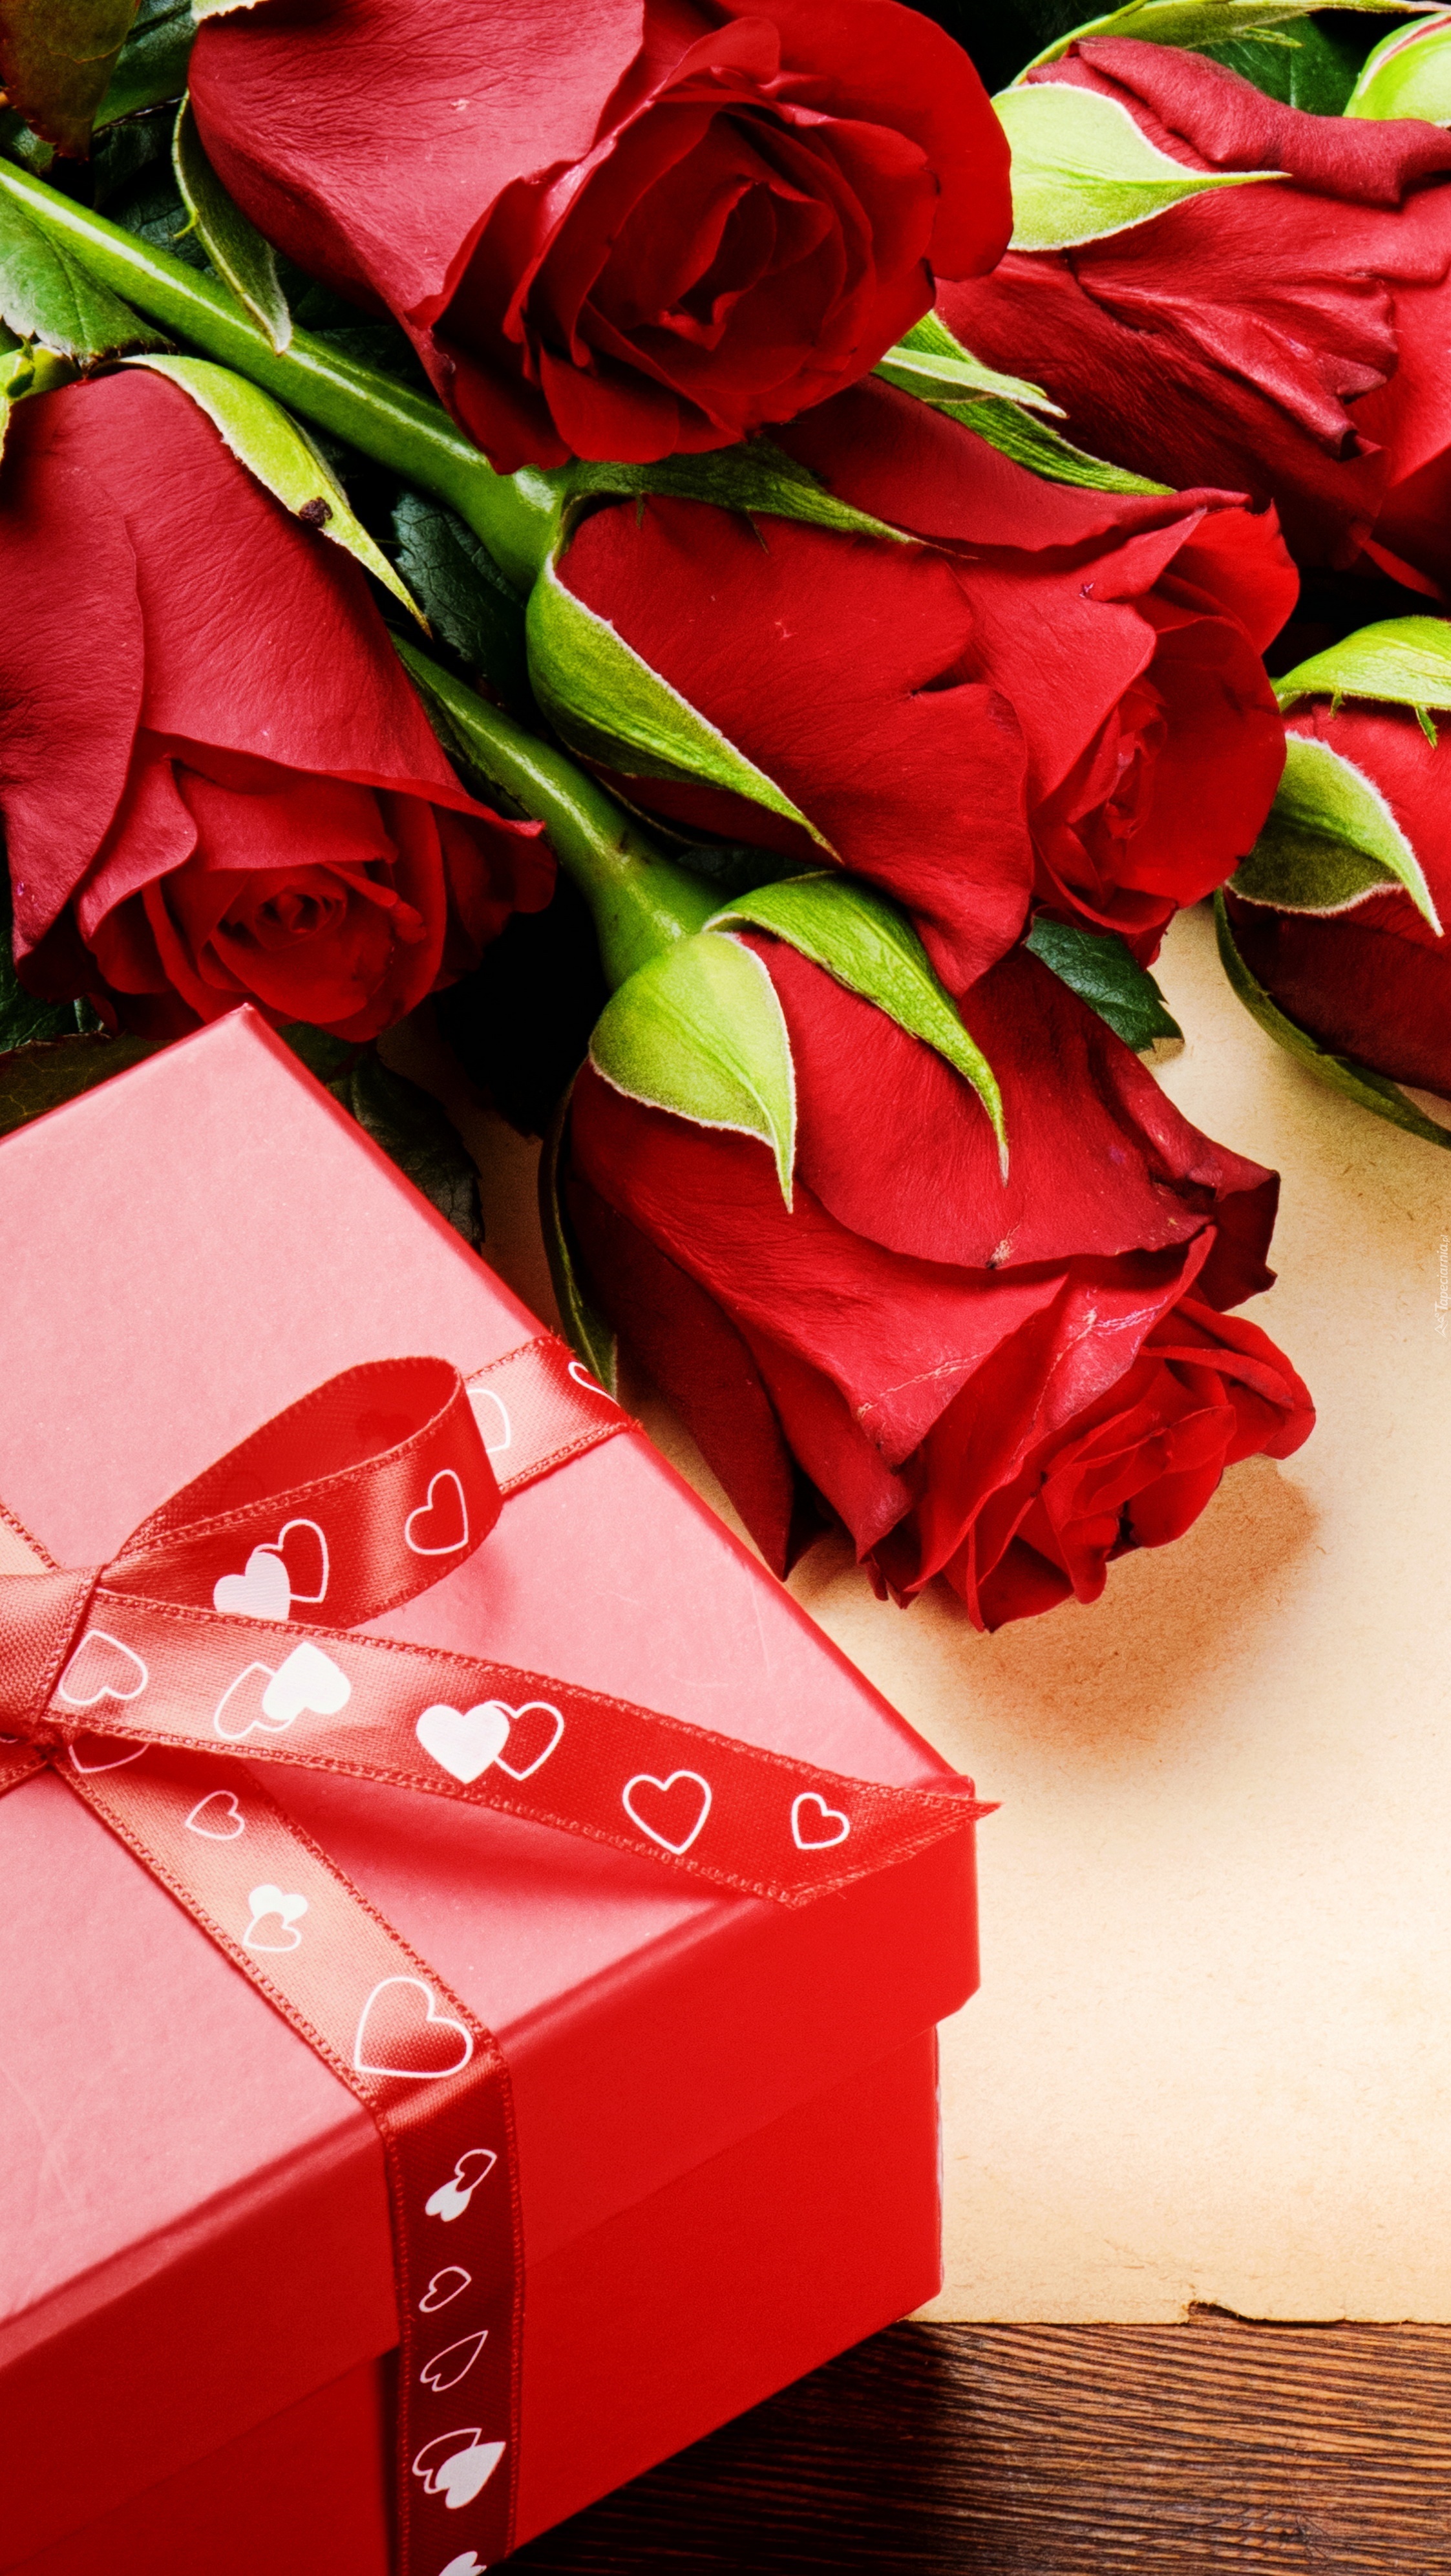 Czerwone róże obok pudełka przewiązanego wstążką